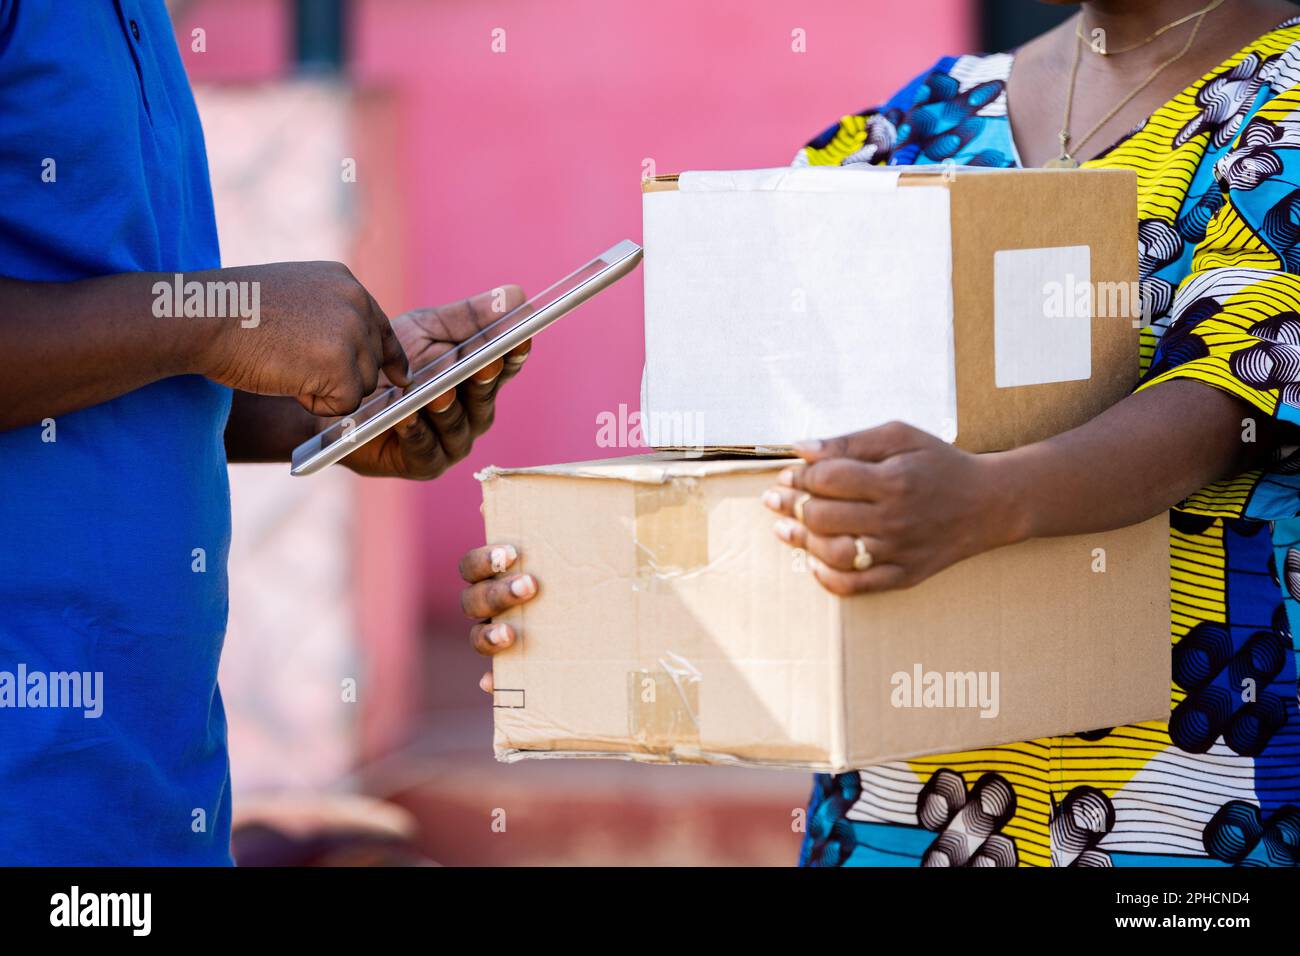 Der Mann für die Zustellung afrikanischer Postsendungen erfasst die Belegdetails des gelieferten Papppakets mit einem digitalen Smart Tablet, das von einer weiblichen Kundin online gekauft wurde. Stockfoto